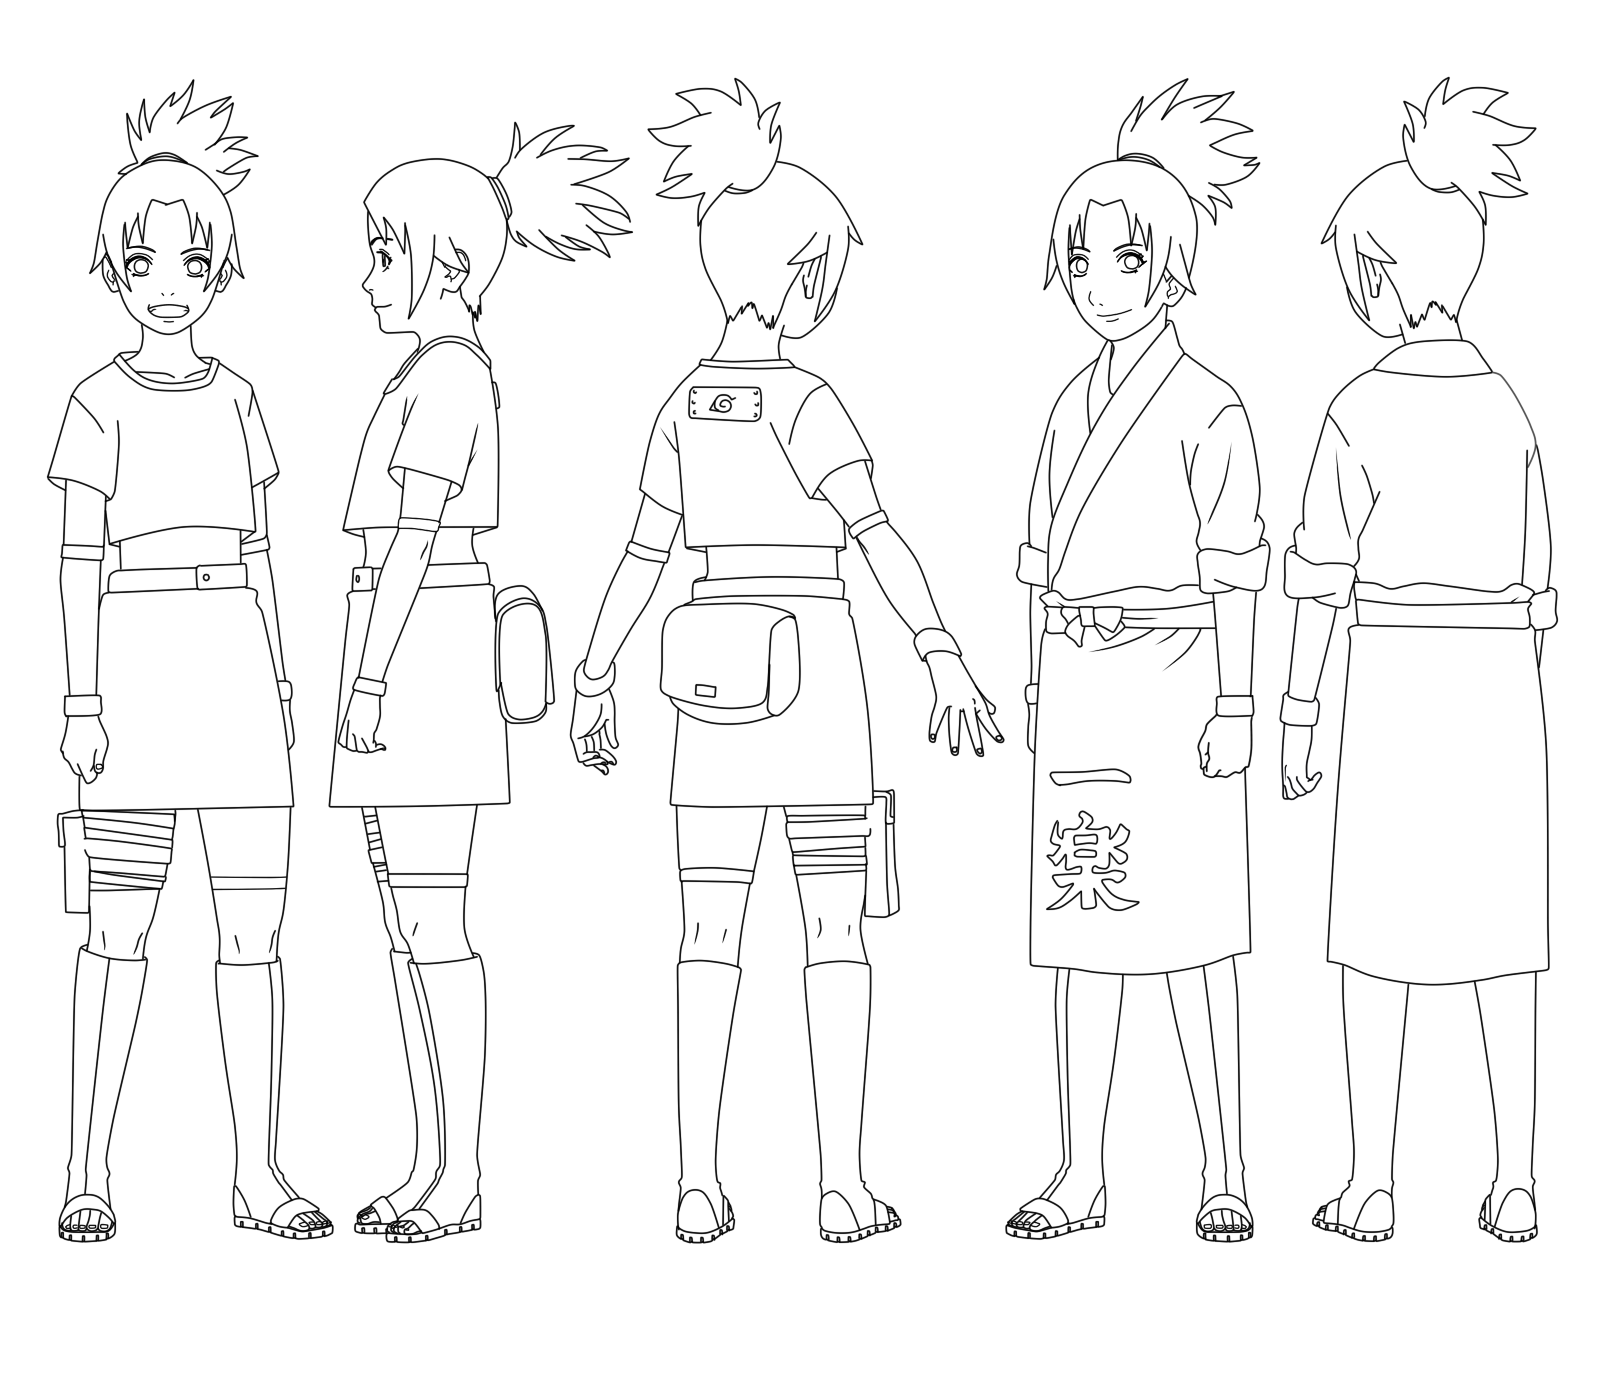 Iruka Umino (Genderflip) - Character Sheet by SomeRandomGenin34 on  DeviantArt